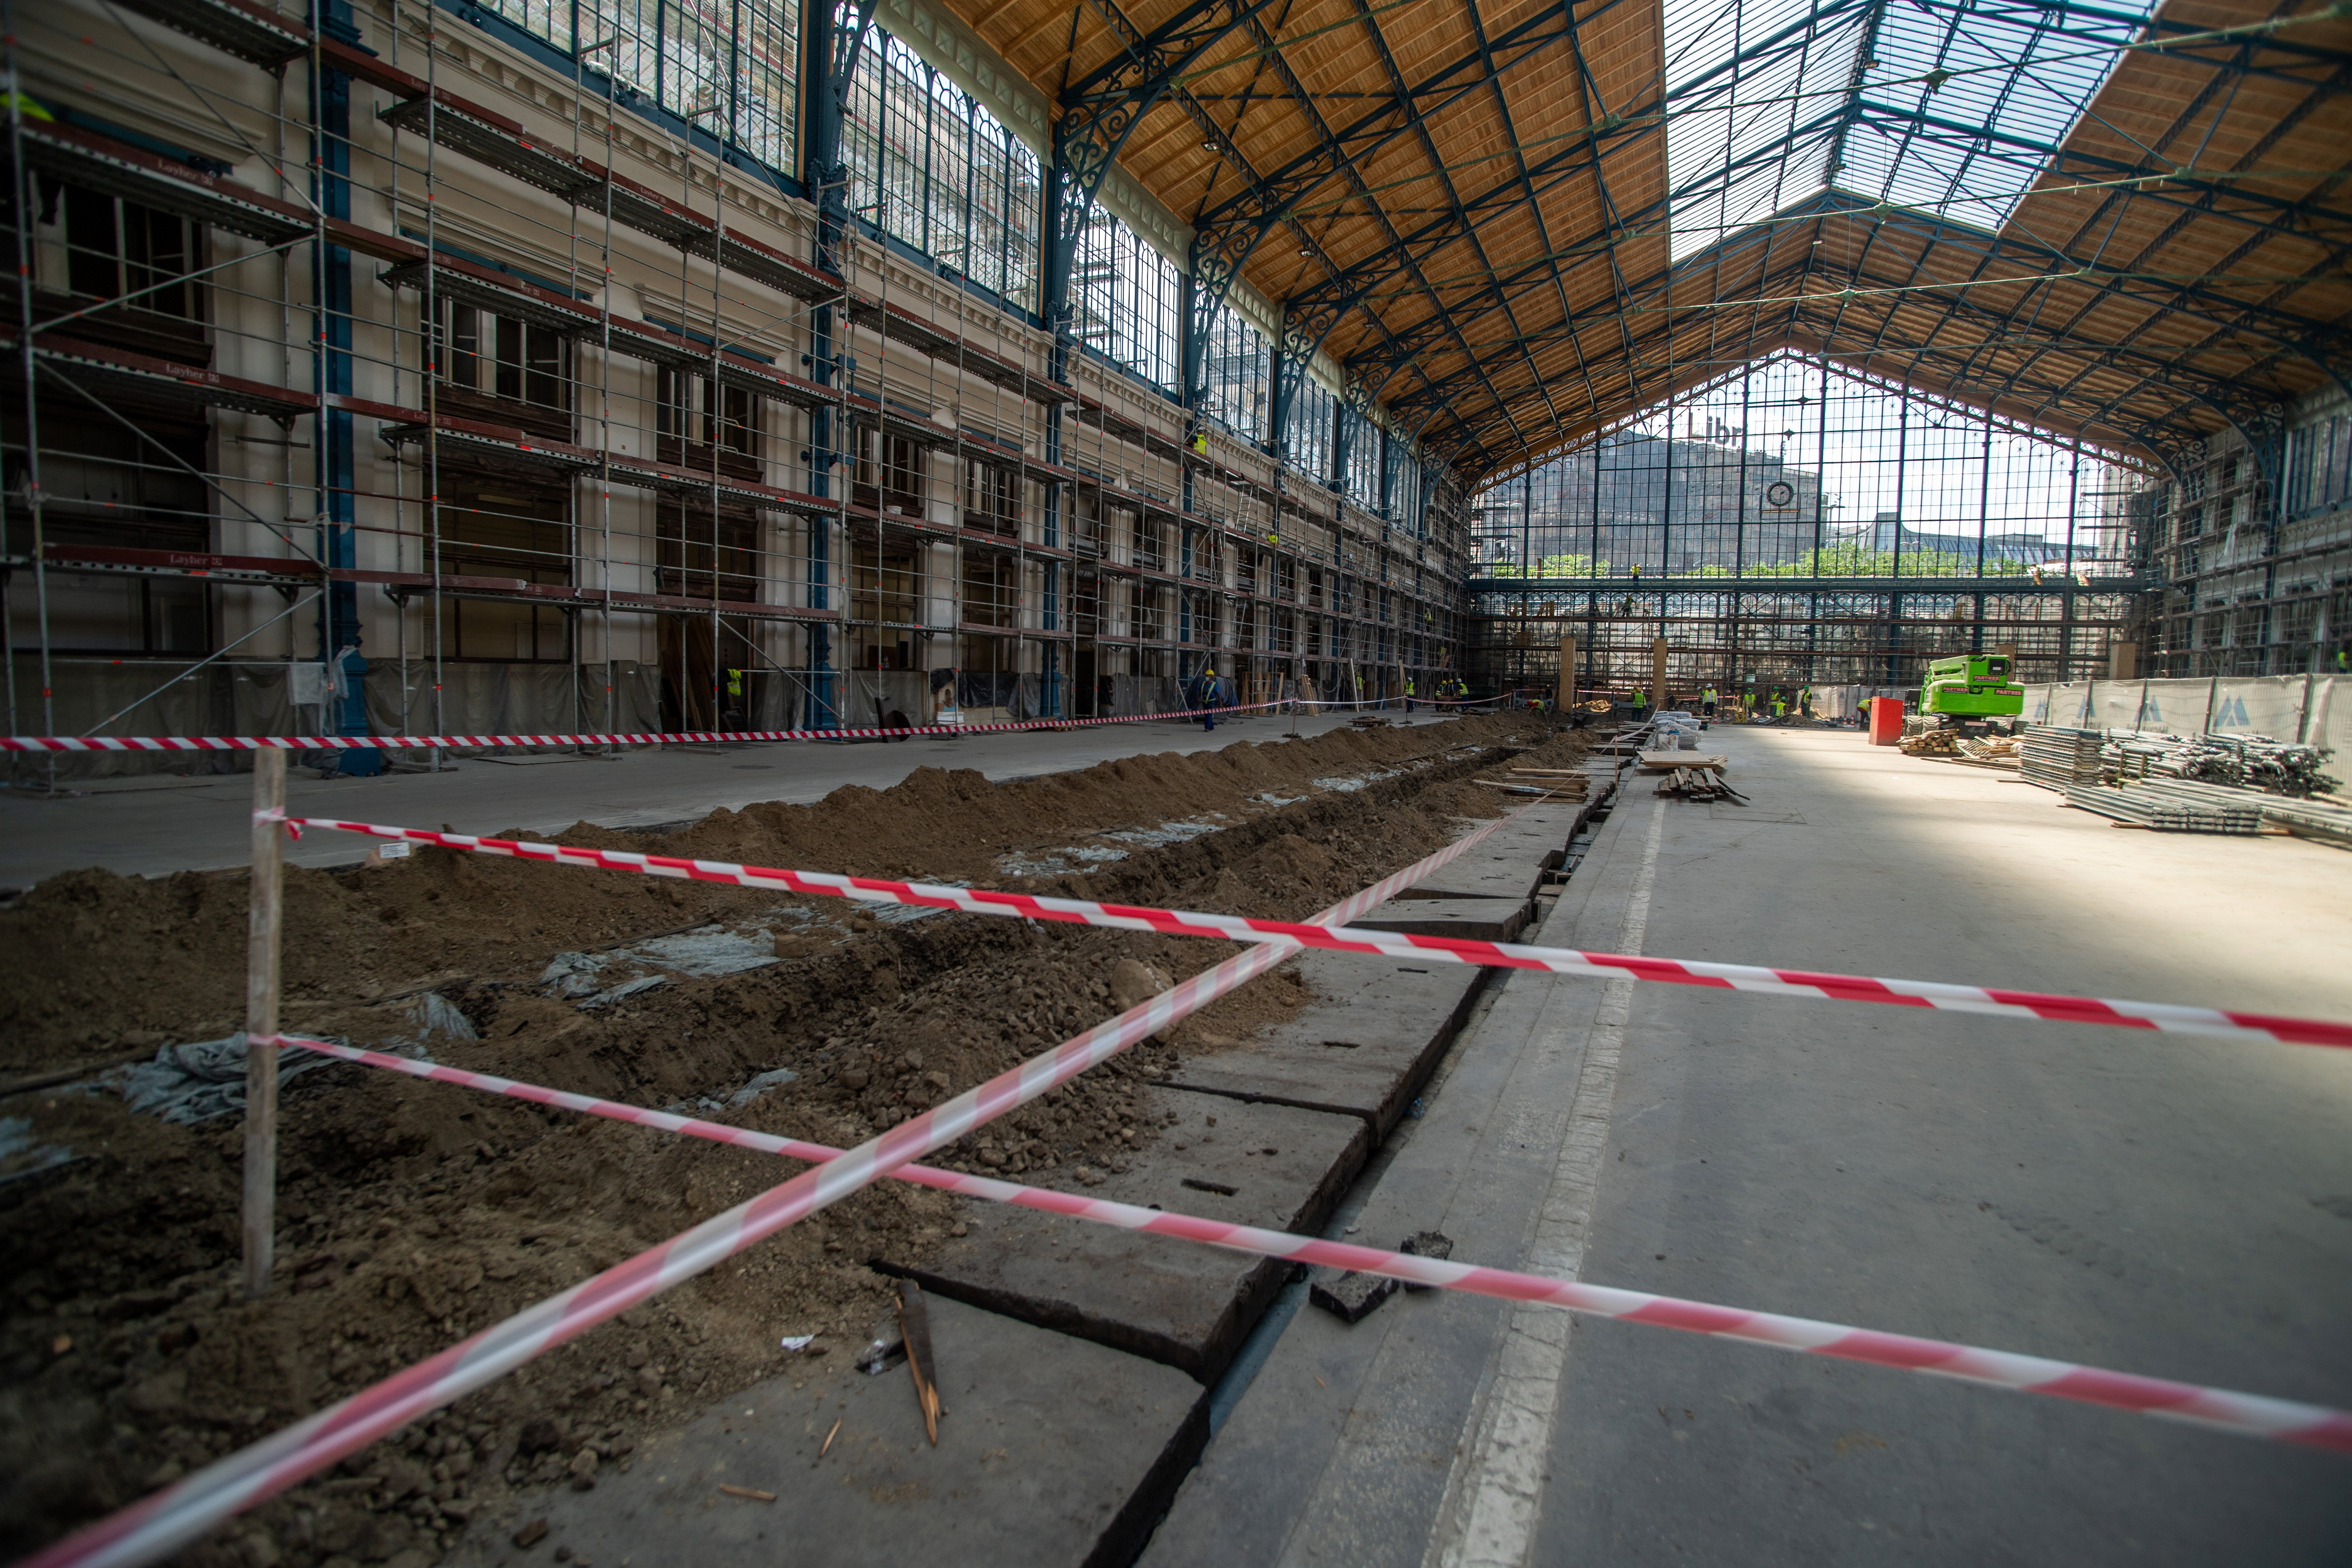 Mától egy hónapra lezárják a Nyugati pályaudvart – a BKK is elfogadja a vasúti bérleteket